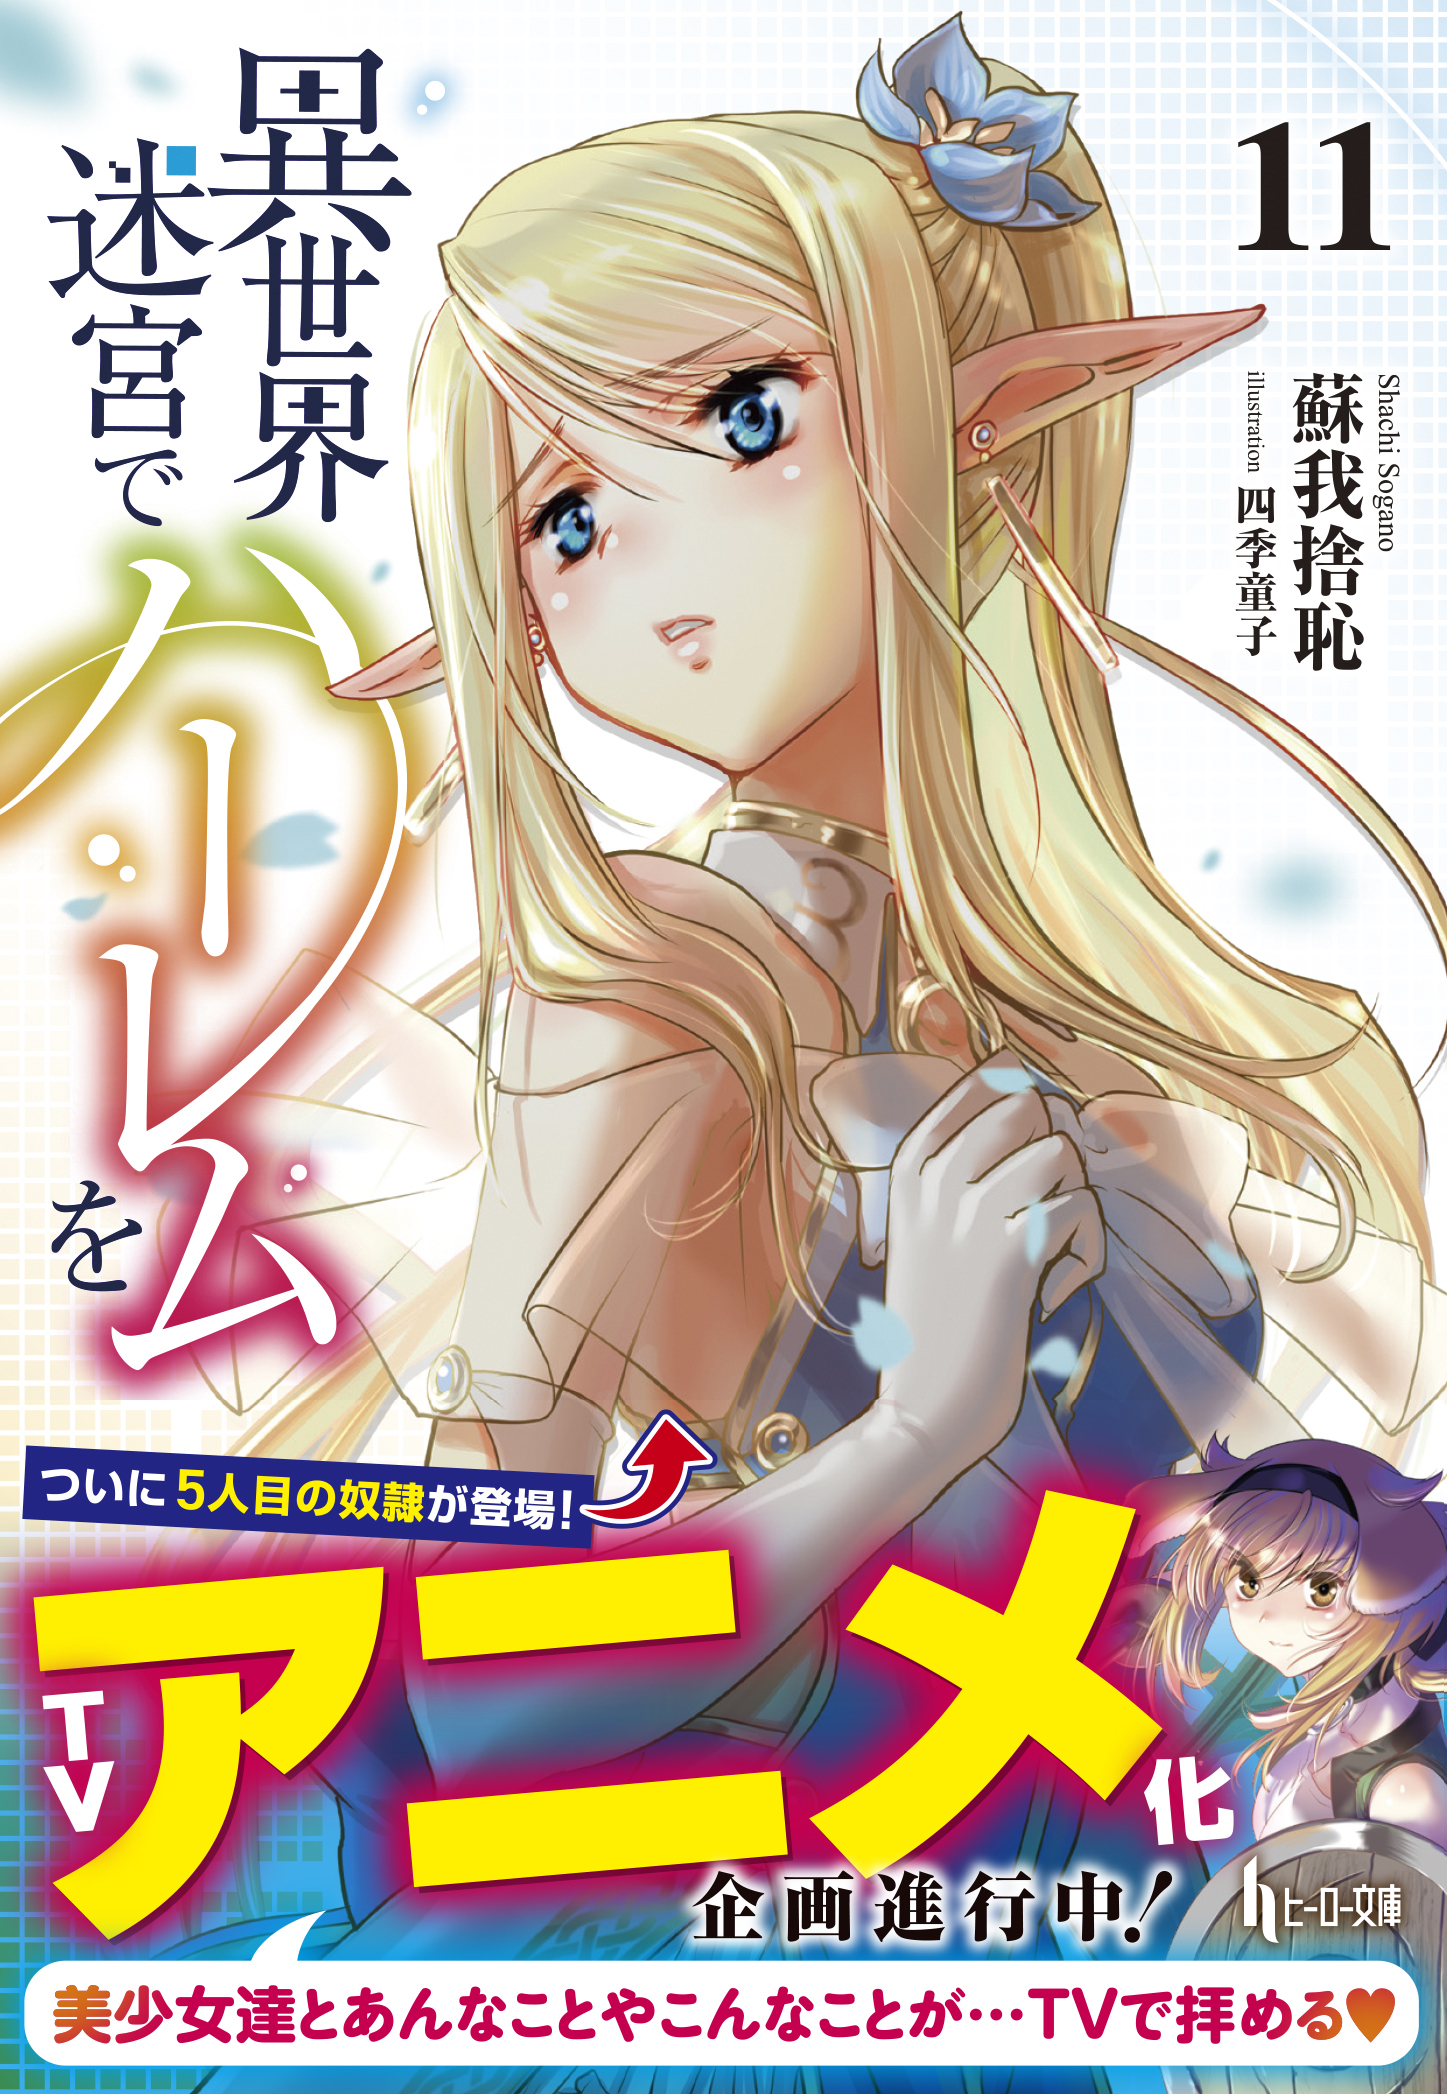 Best Anime & Manga Like Isekai Meikyuu de Harem wo, by nntheblog